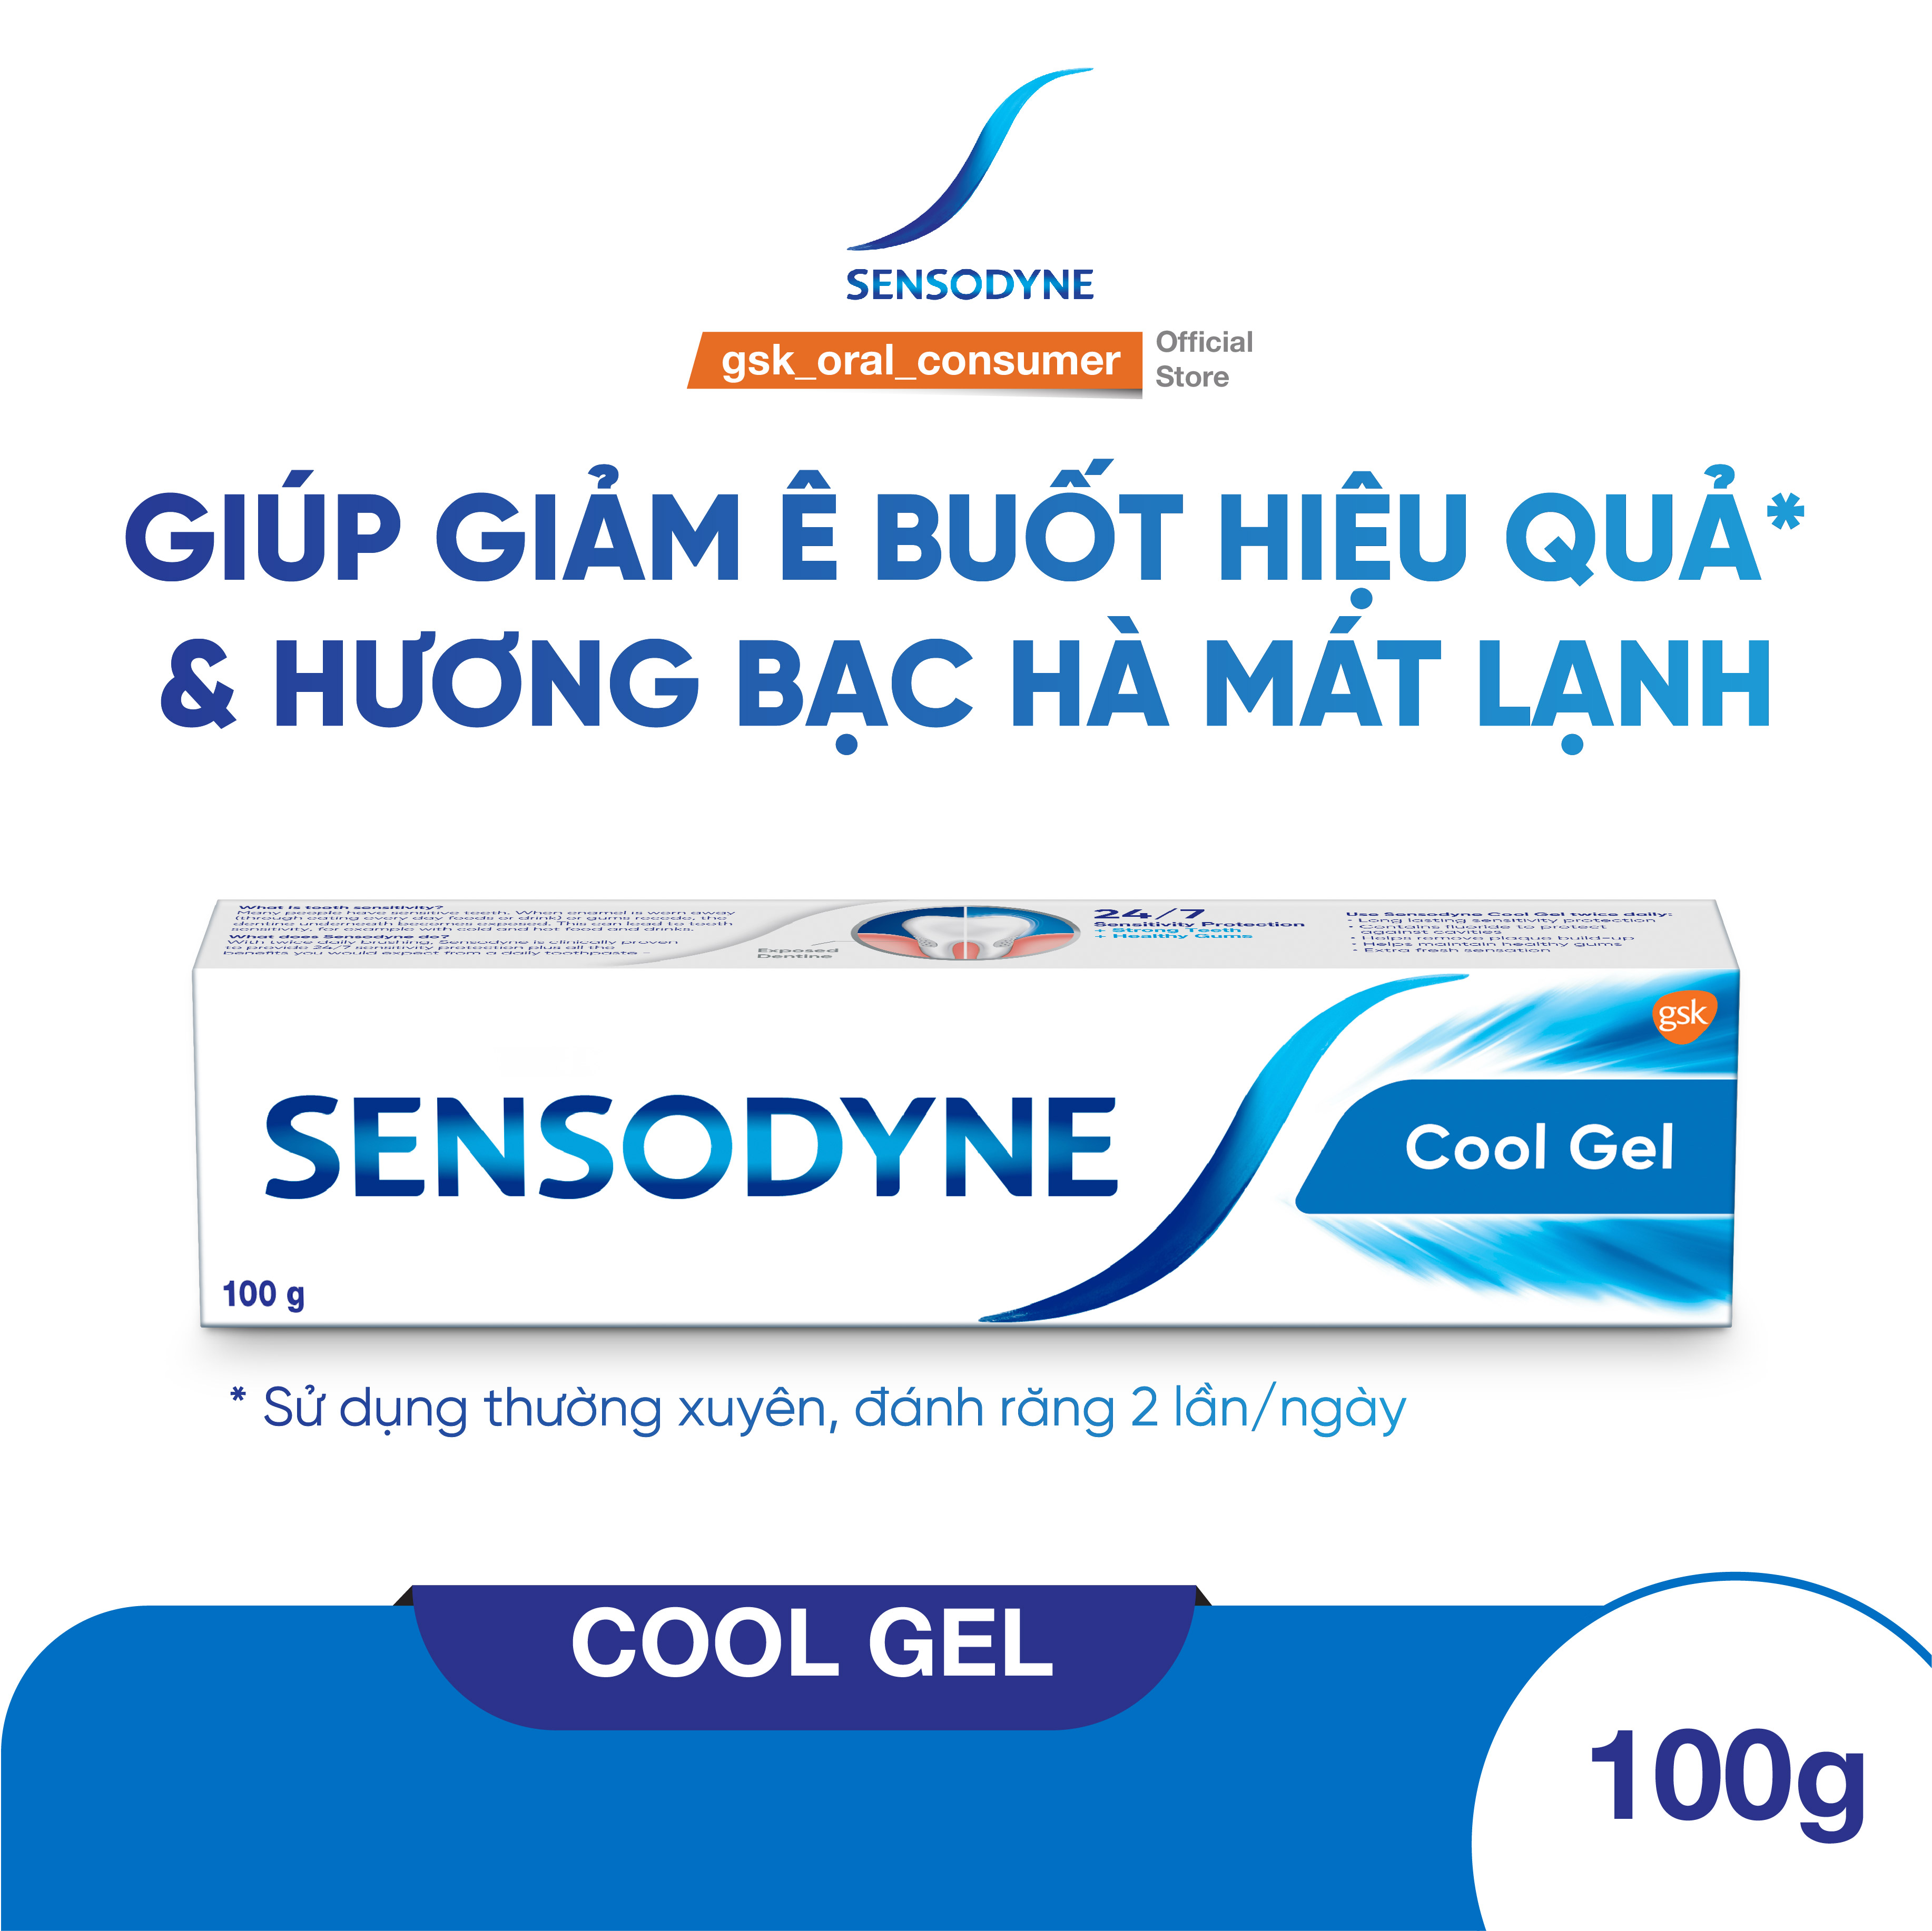 Bộ 3 Kem đánh răng SENSODYNE Cool Gel 100g giúp giảm ê buốt hiệu quả với hương bạc hà mát lạnh